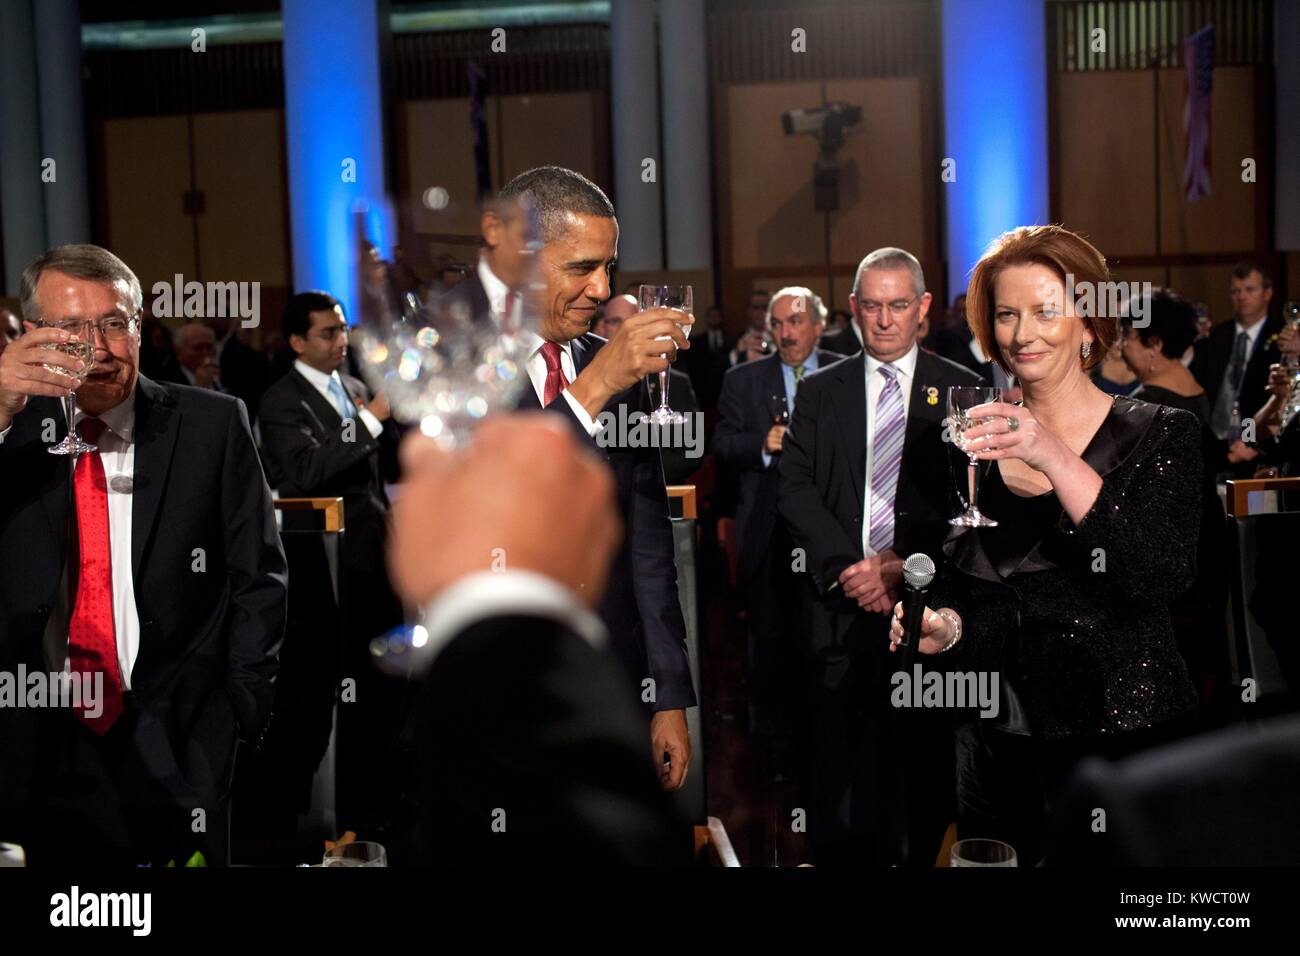 Le premier ministre Julia Gillard propose un toast au Président Barack Obama. Au dîner parlementaire à la maison du parlement à Canberra, Australie, le 16 novembre 2011. (BSLOC 2015 3 144) Banque D'Images